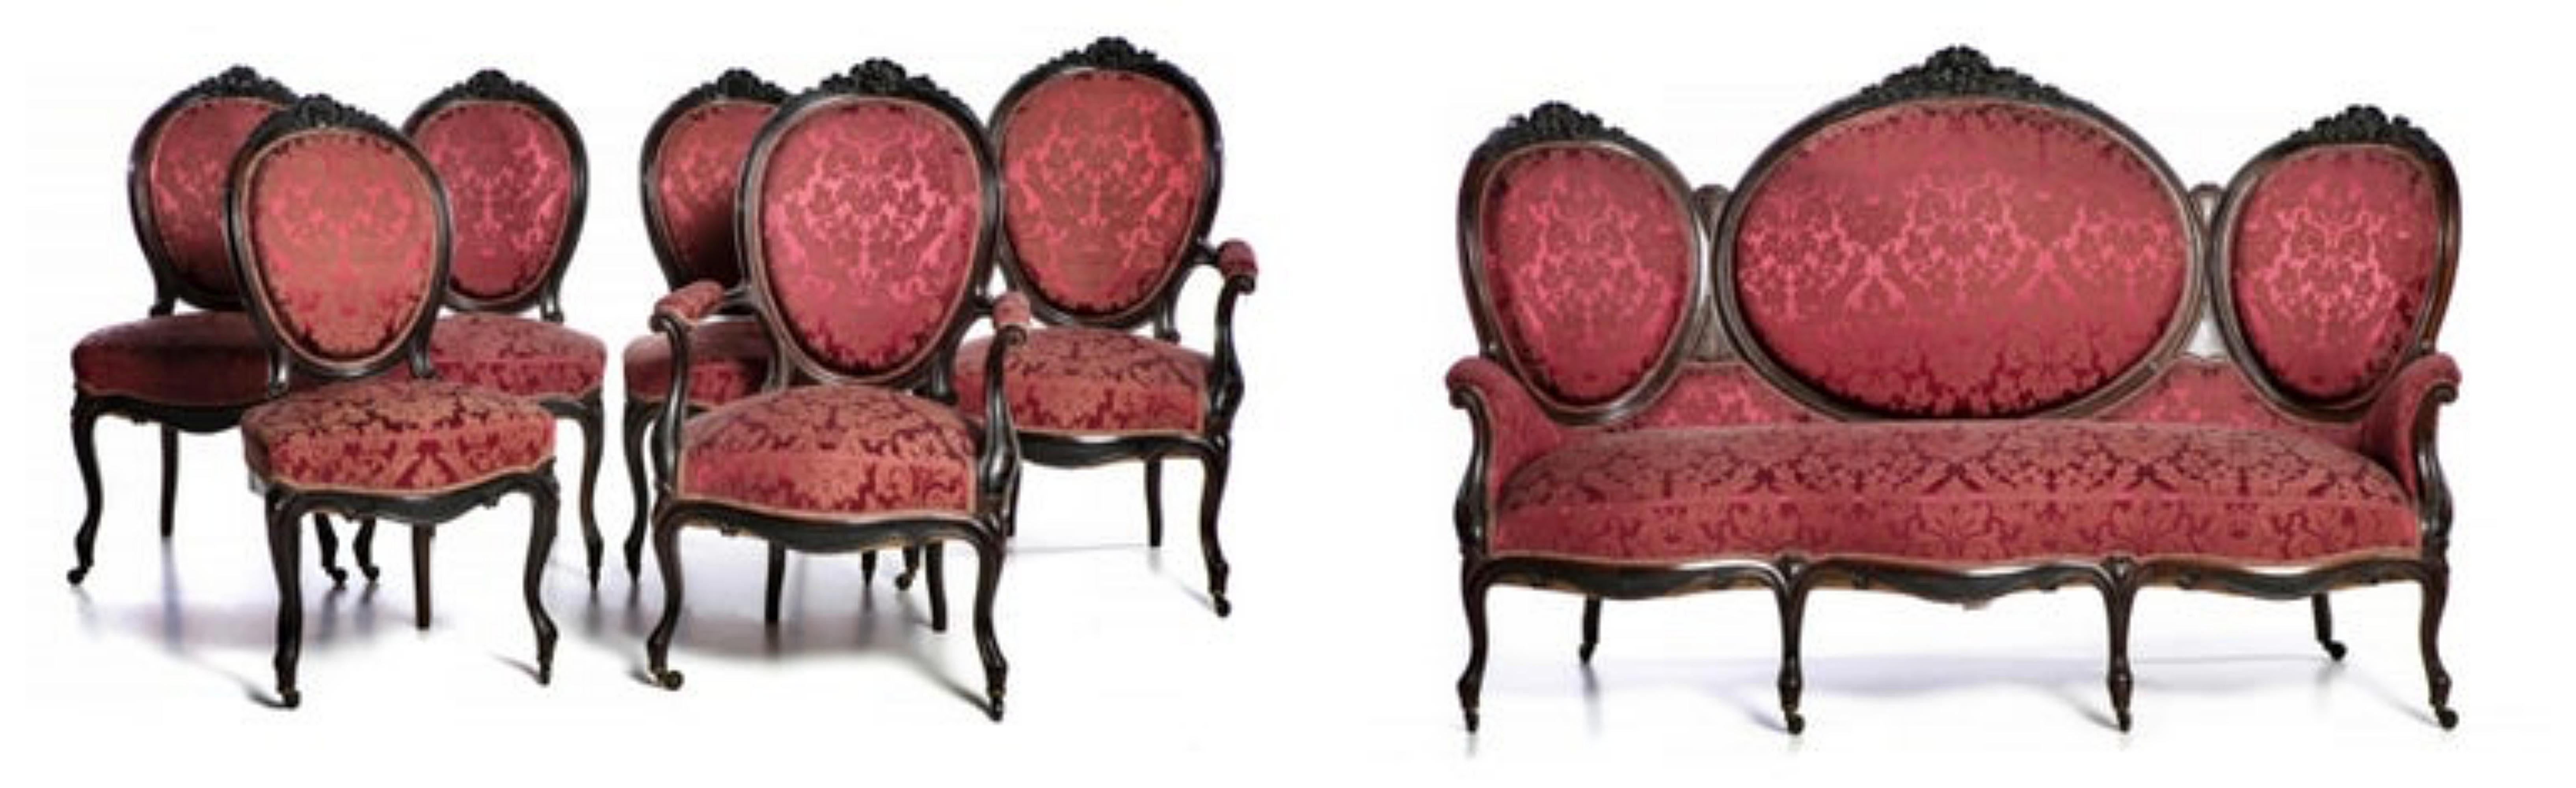 Canape set deux fauteuils et quatre chaises.

Portugais du 19e siècle.
style romantique, en bois de rose.
Assise et dossier en damas.
Dim. : (canapé) 120 x 178 x 56 cm.
Bon état.